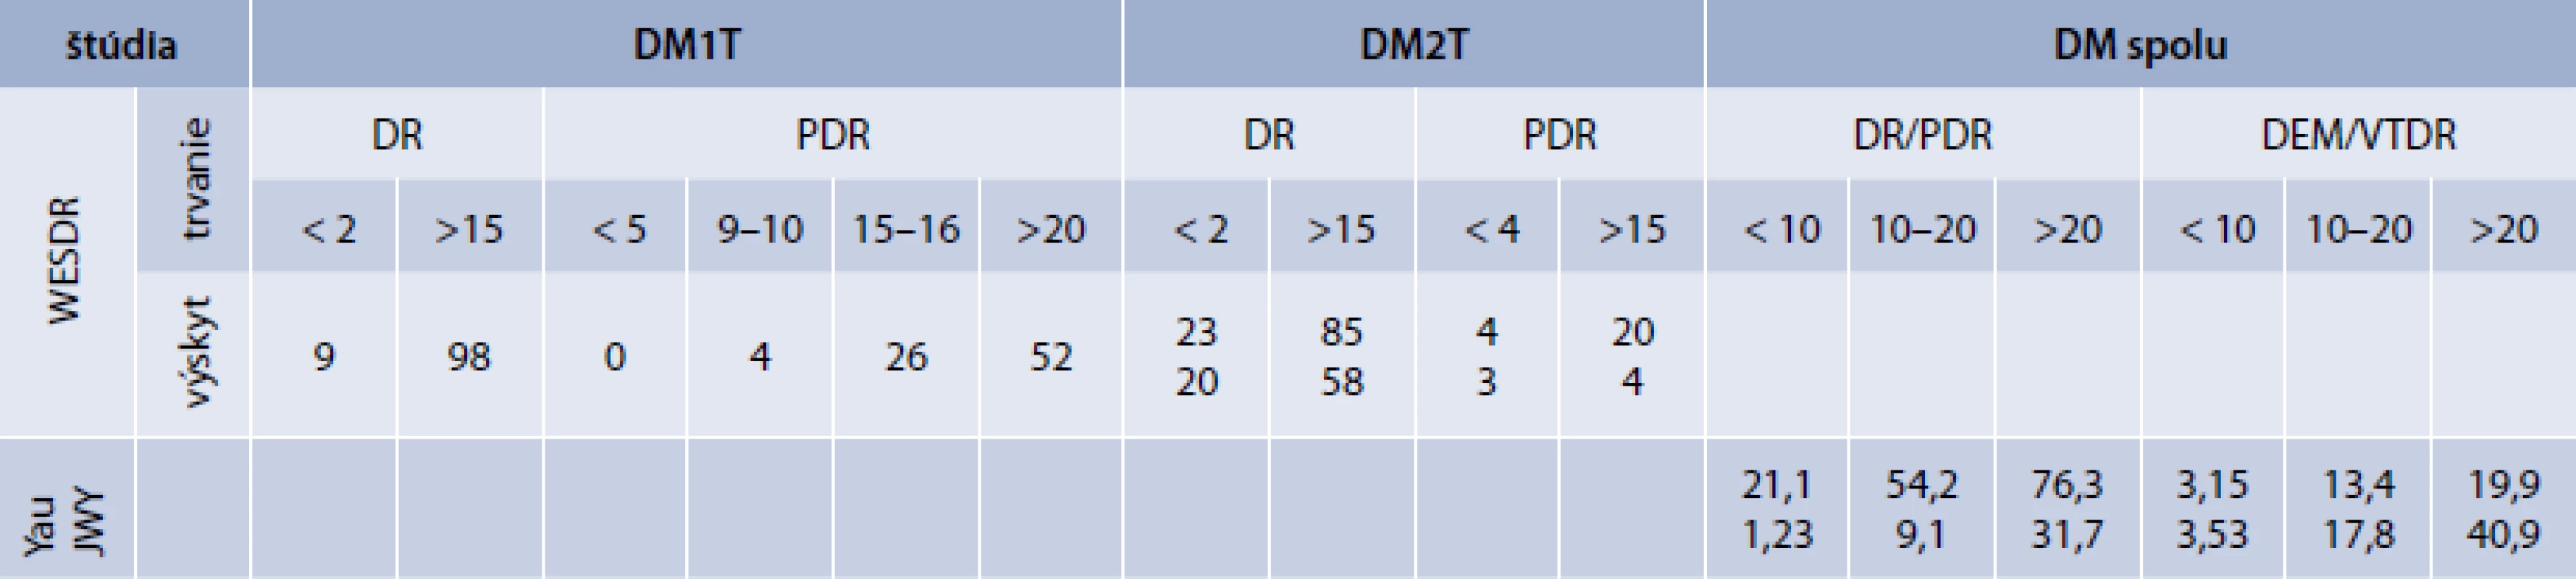 Priemerný výskyt DR v literatúre podľa trvania DM (%)